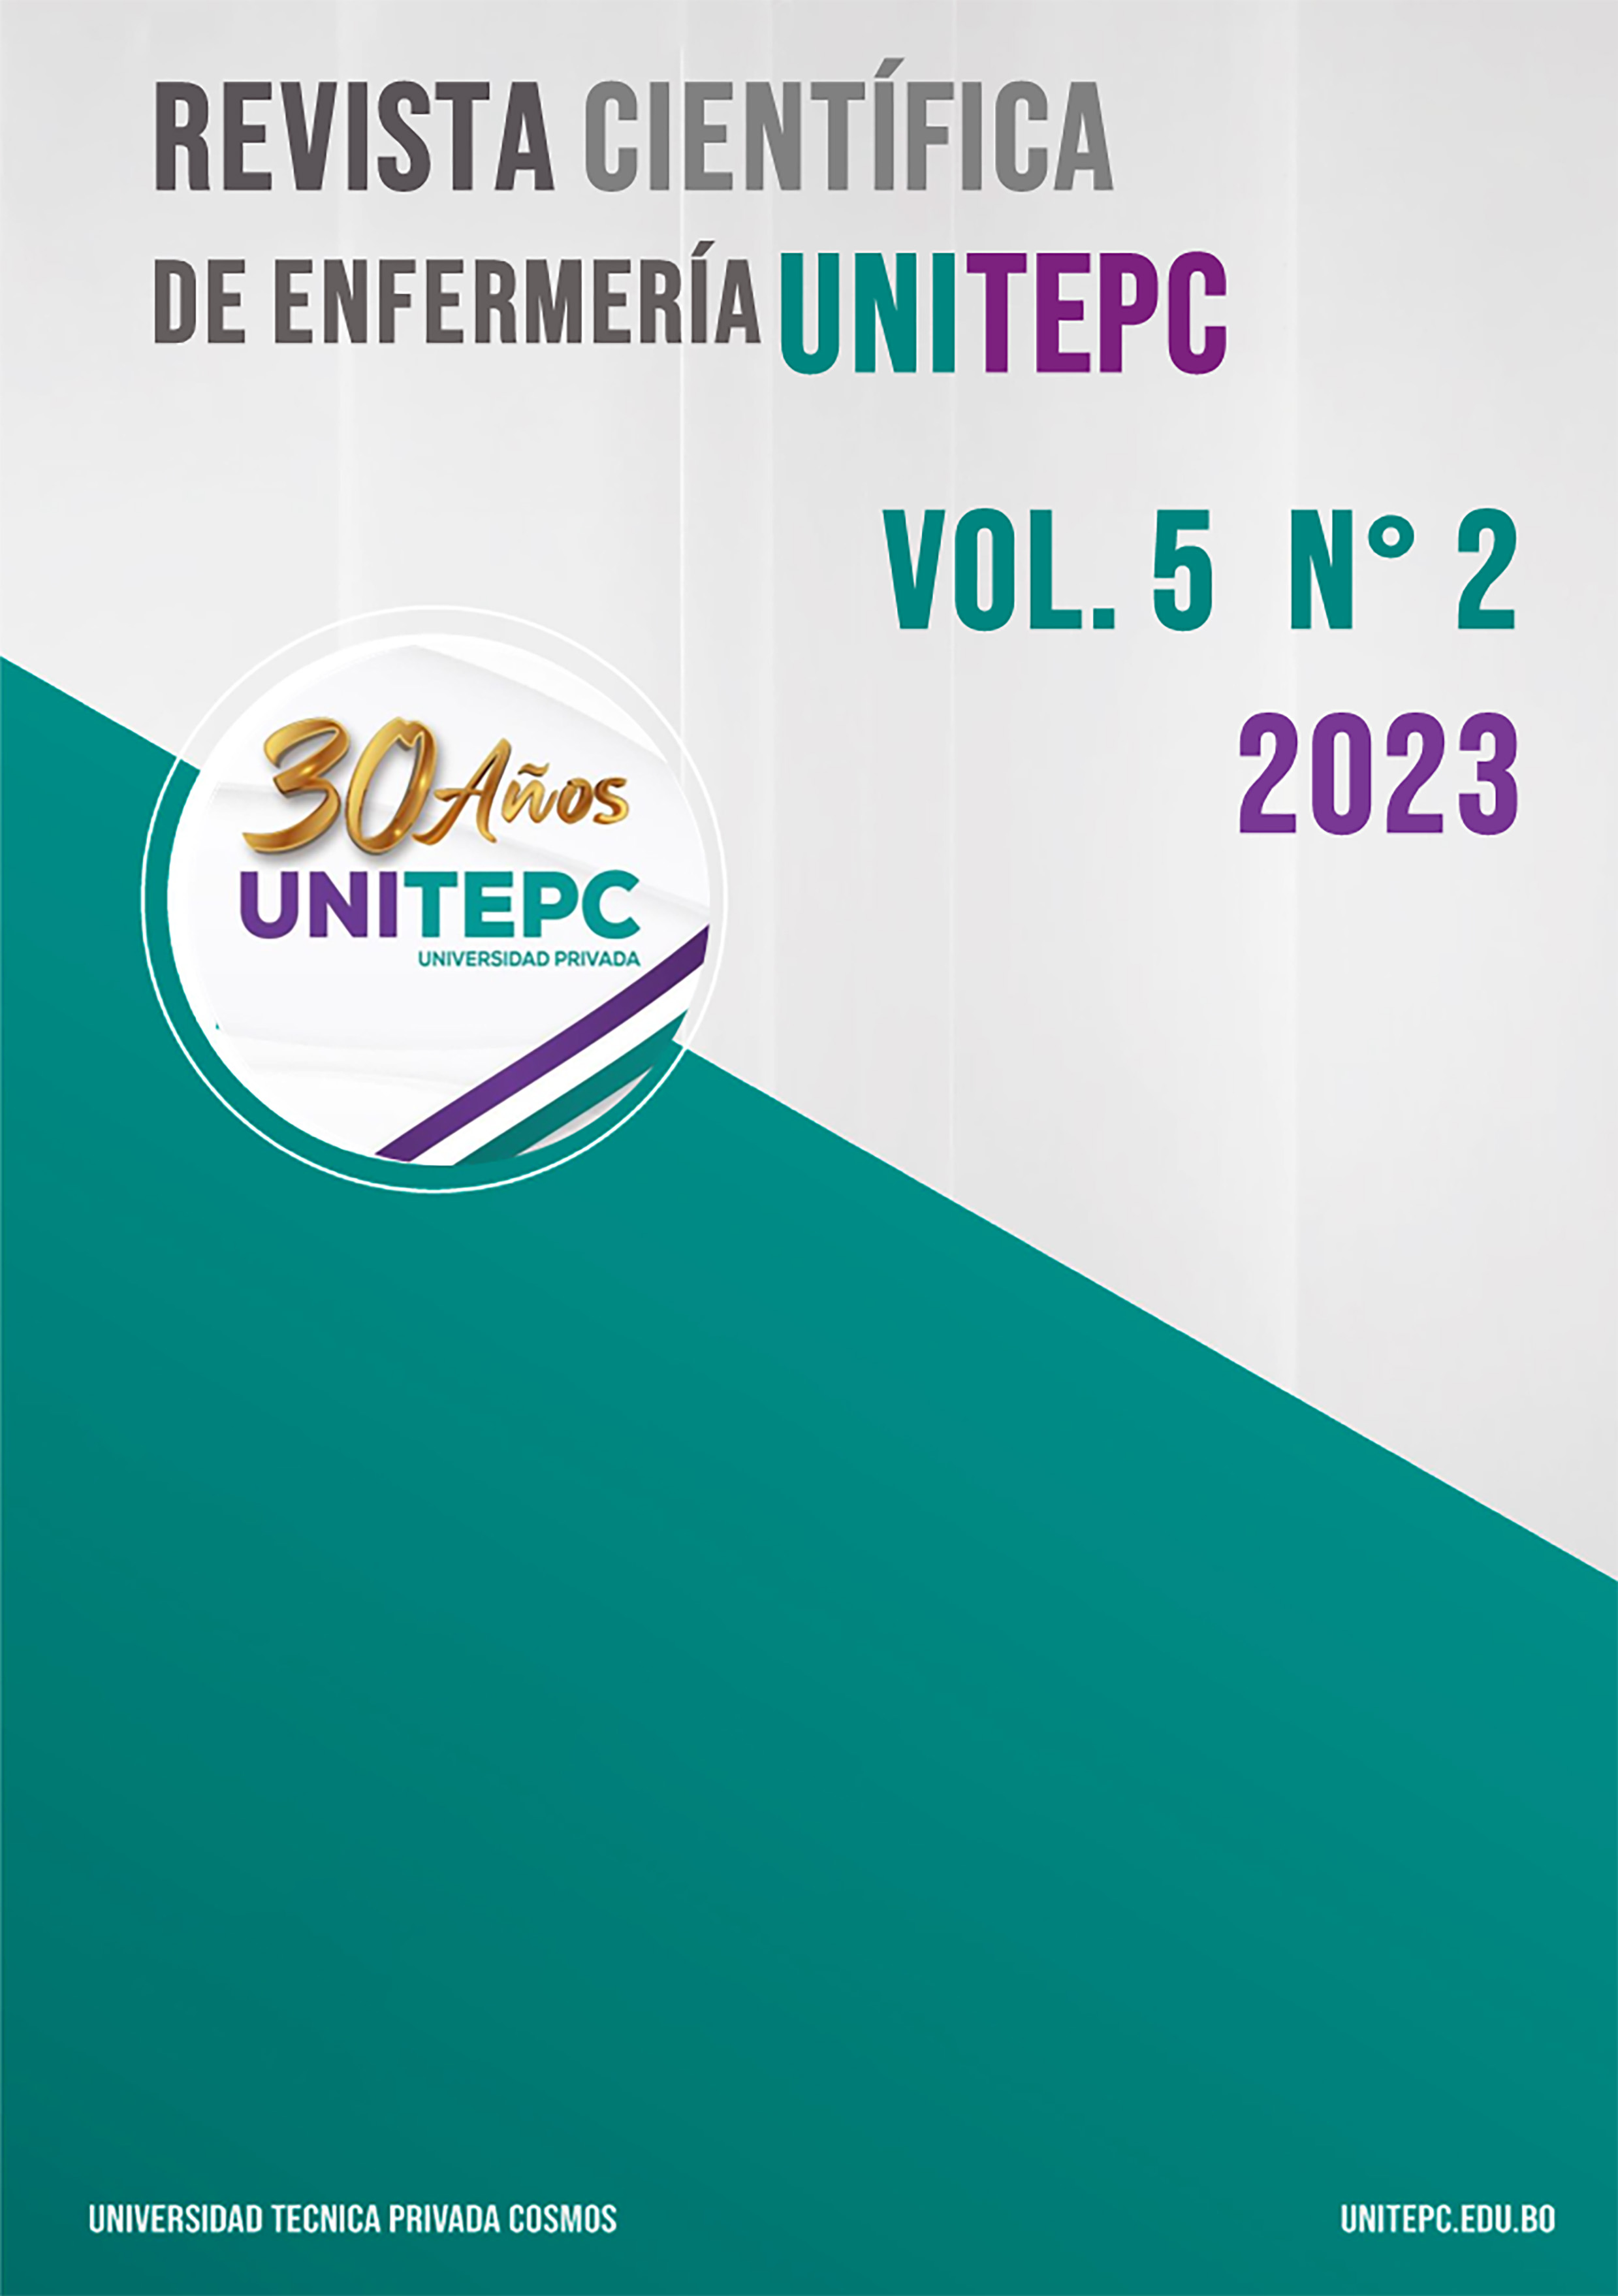 					View Vol. 5 No. 2 (2023): Revista Científica de Enfermería UNITEPC
				